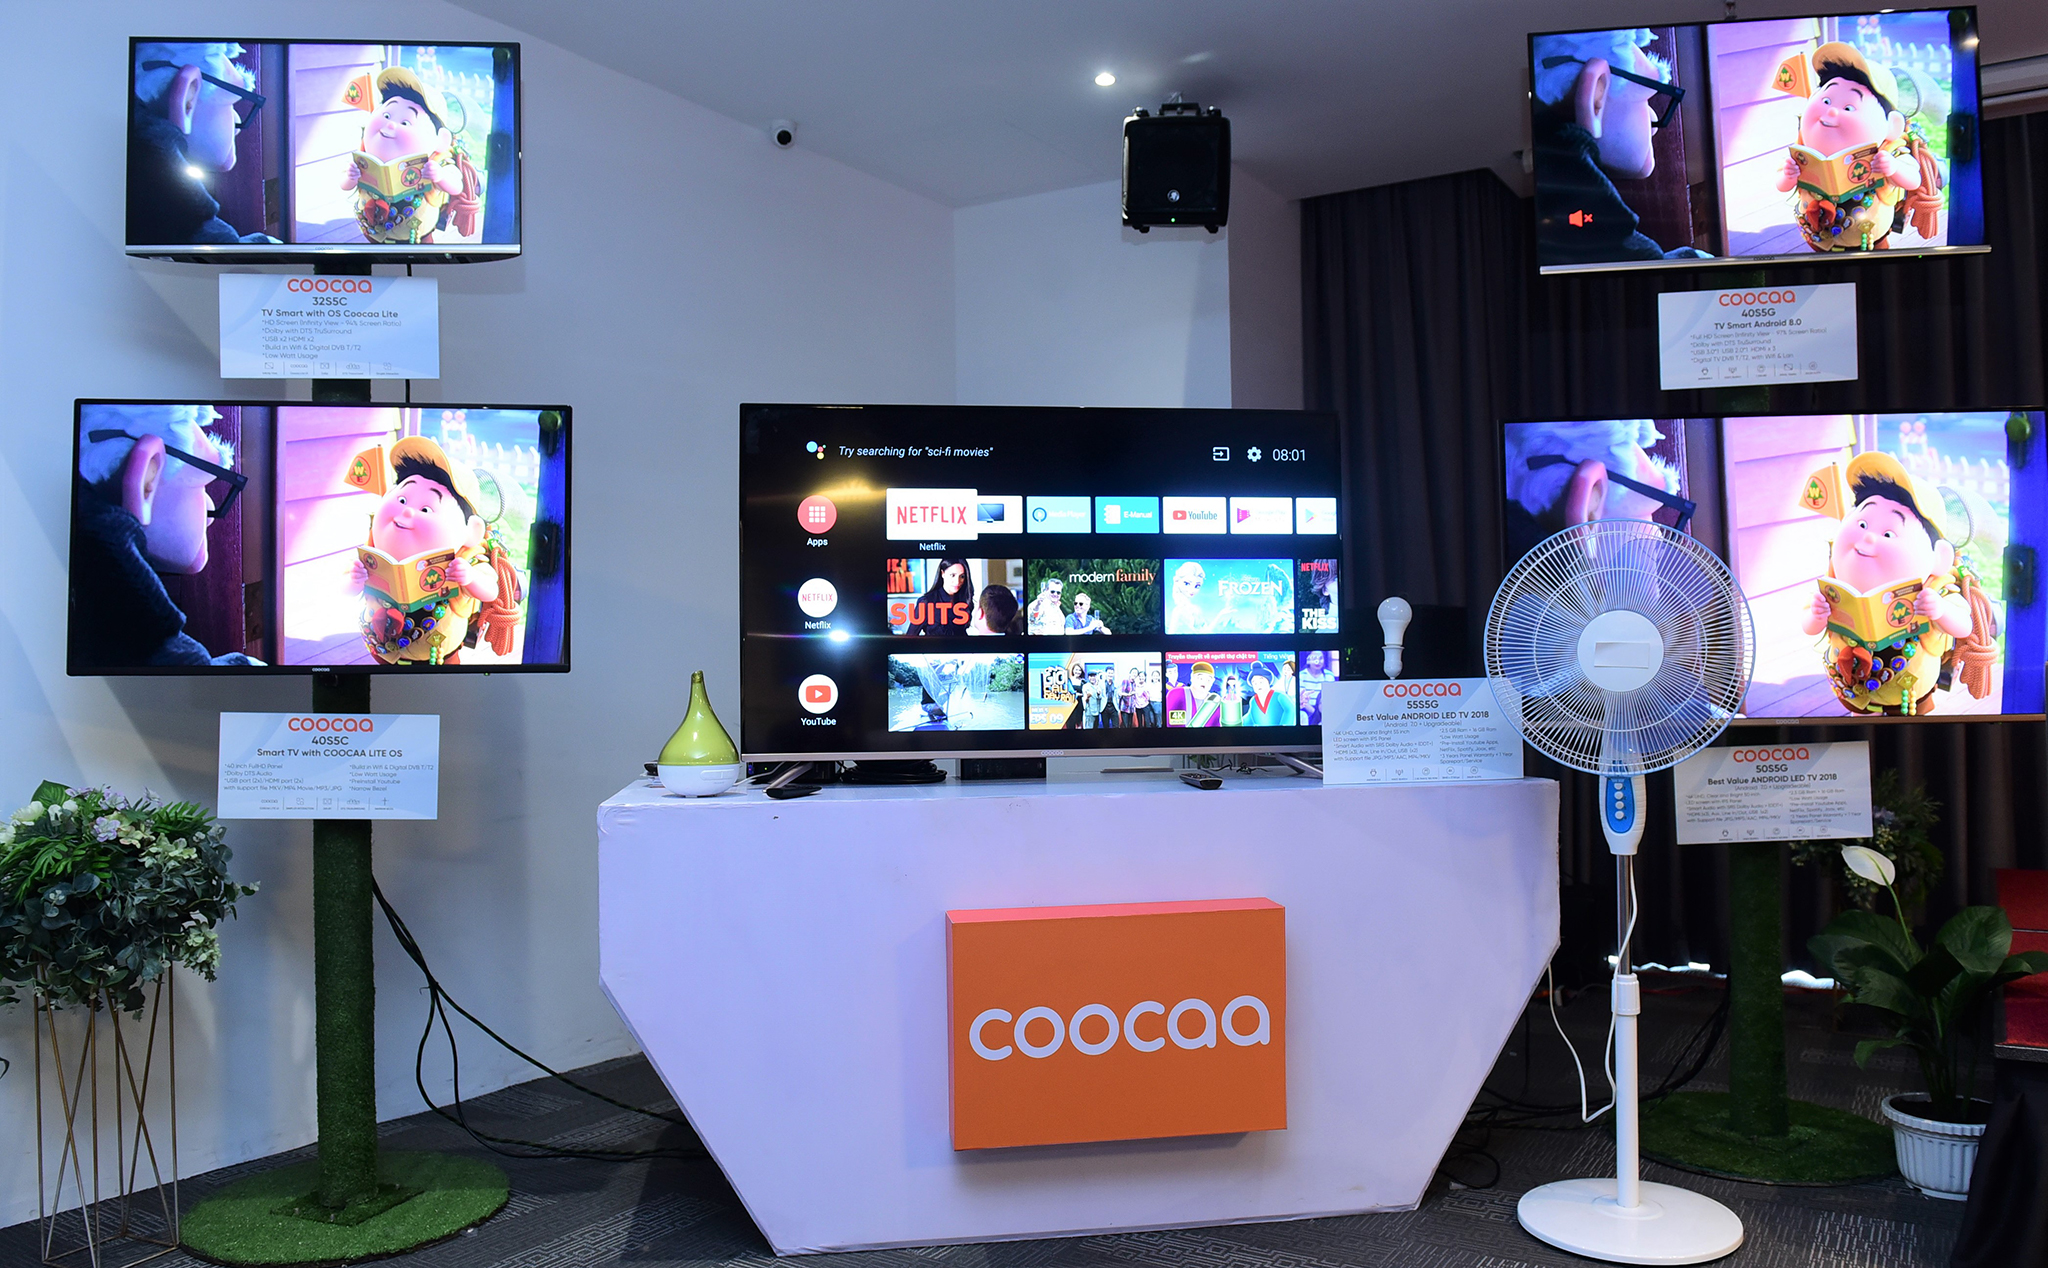 Thương hiệu TV thông minh Coocaa từ Indonesia ra mắt tại Việt Nam với 5 dòng TV, giá từ 4.69 triệu